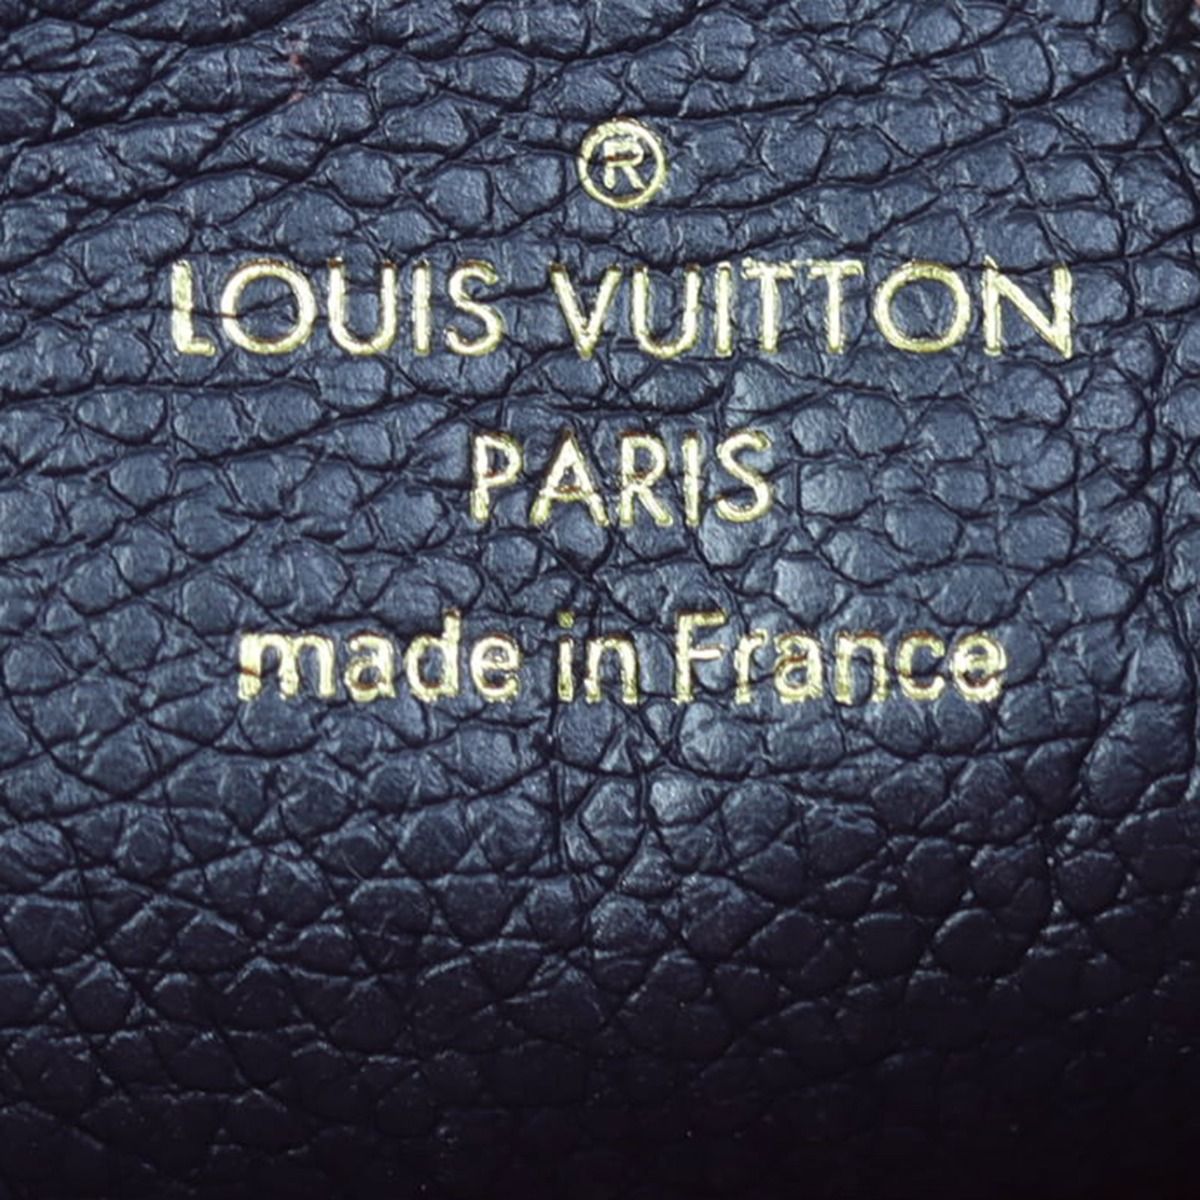 Louis Vuitton, Bags, Louis Vuittonempreinte Pochette Melanie Mm